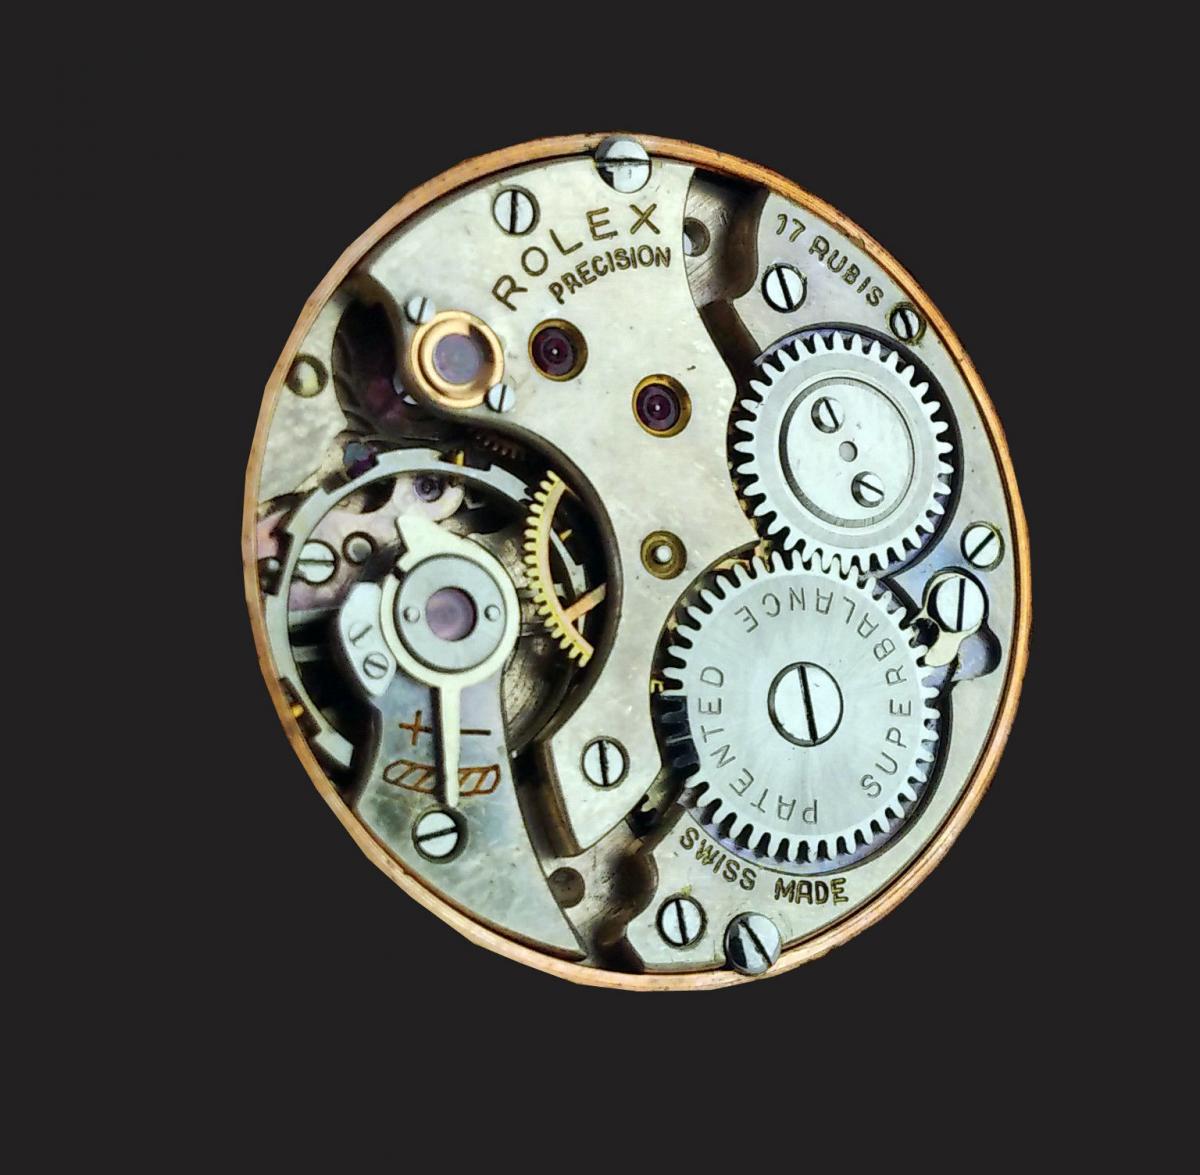 Rose Gold Rolex Precision wristwatch circa 1945